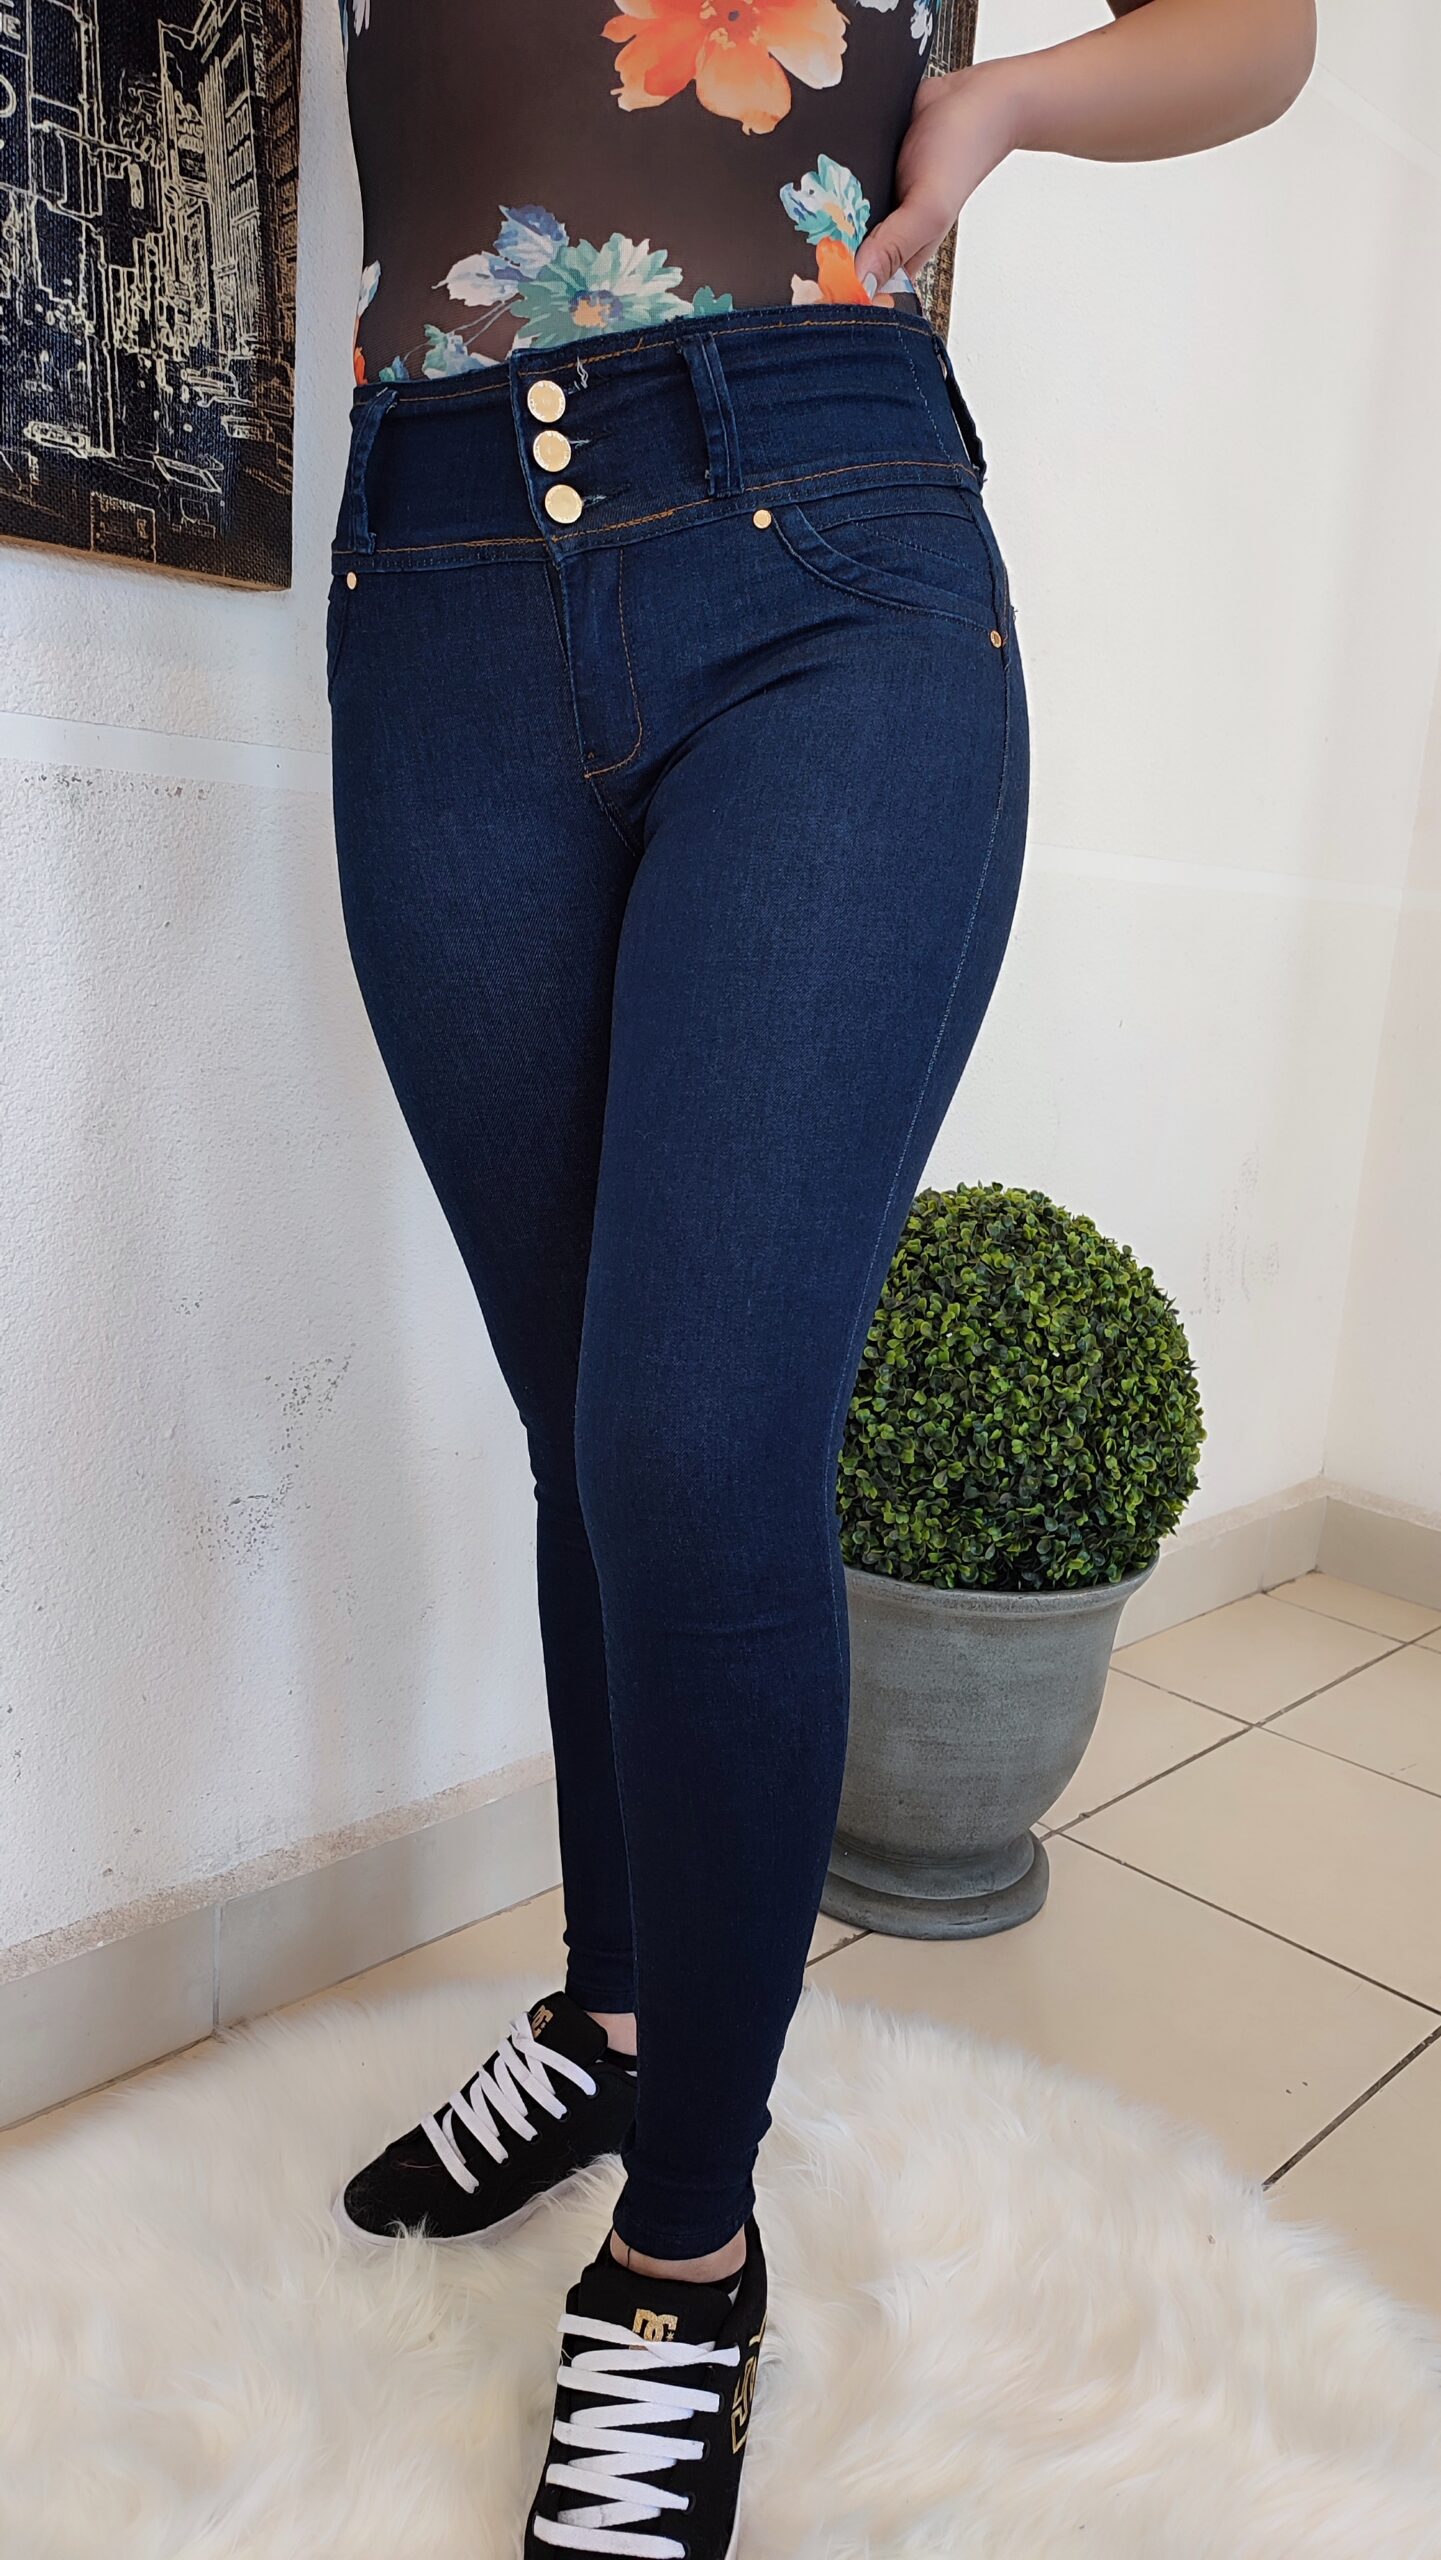 Nuevo jeans para moldear tu figura! Con pinzas y efecto push up 😍 llévalo  por sólo $18.990 desde la talla 36 a 46. Si estas entre 2 tallas …